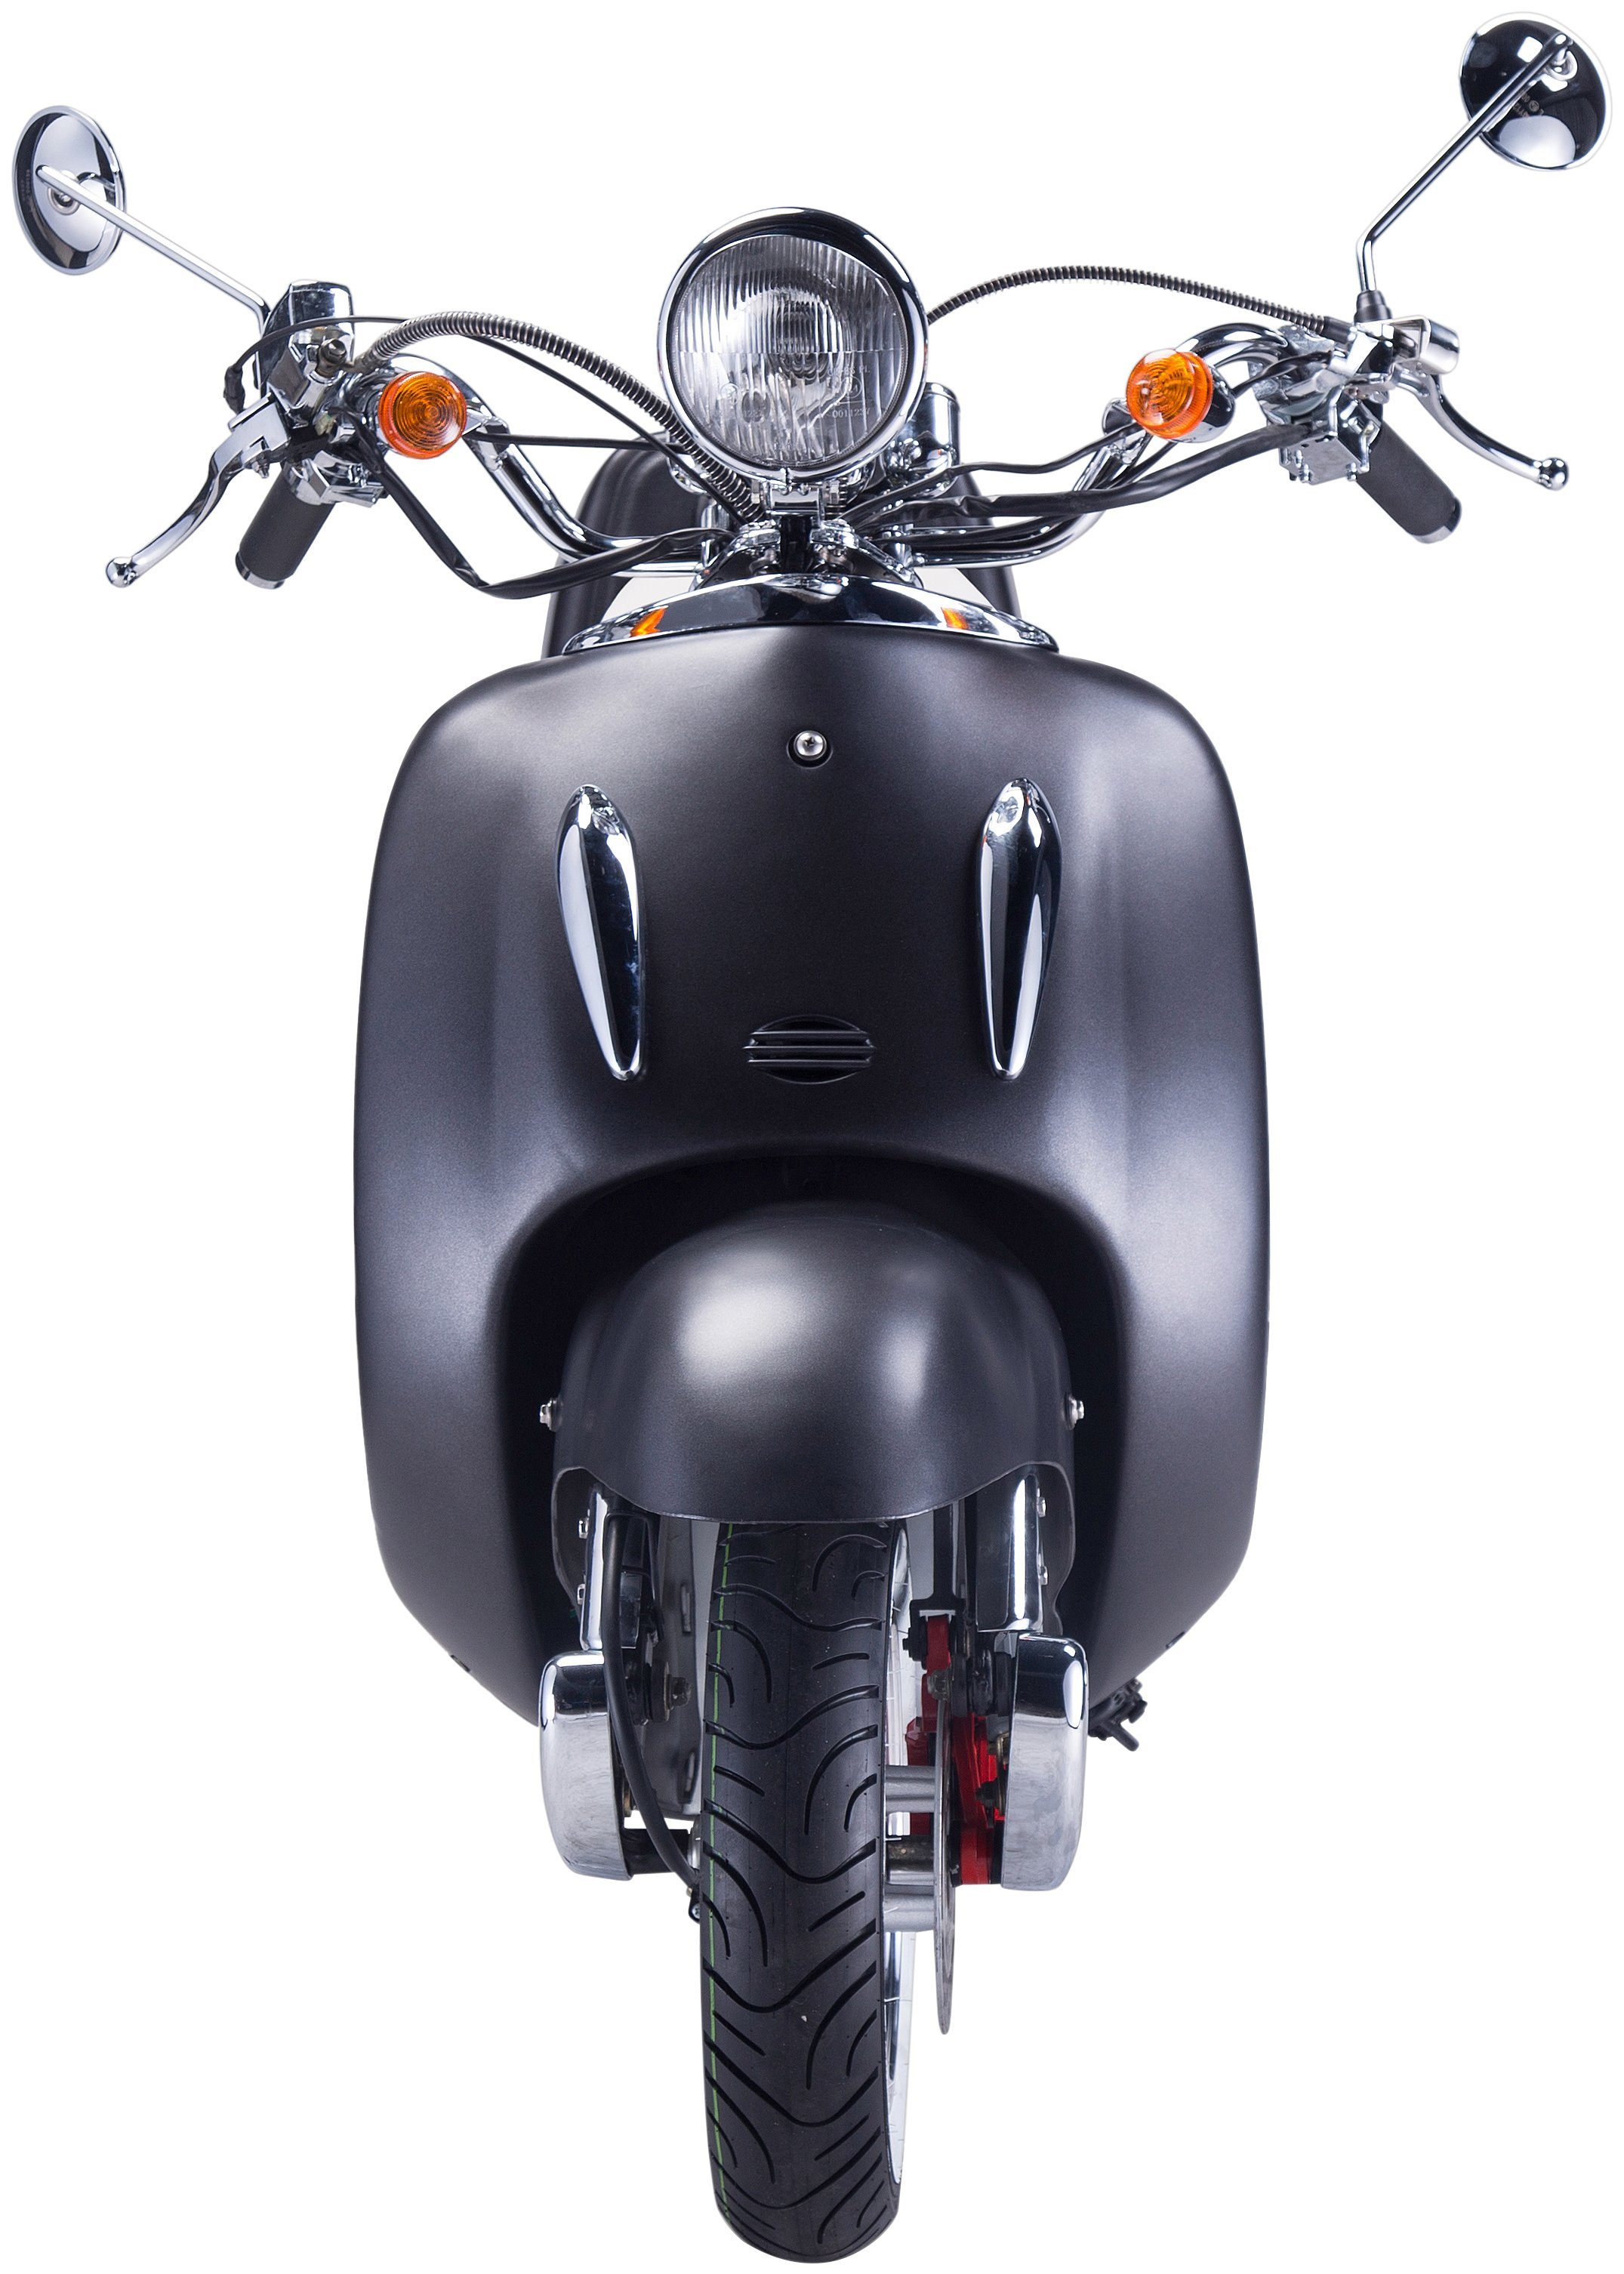 GT UNION Motorroller 5, 85 ccm, km/h, schwarz/silberfarben (Set), mit Euro 125 Topcase Strada